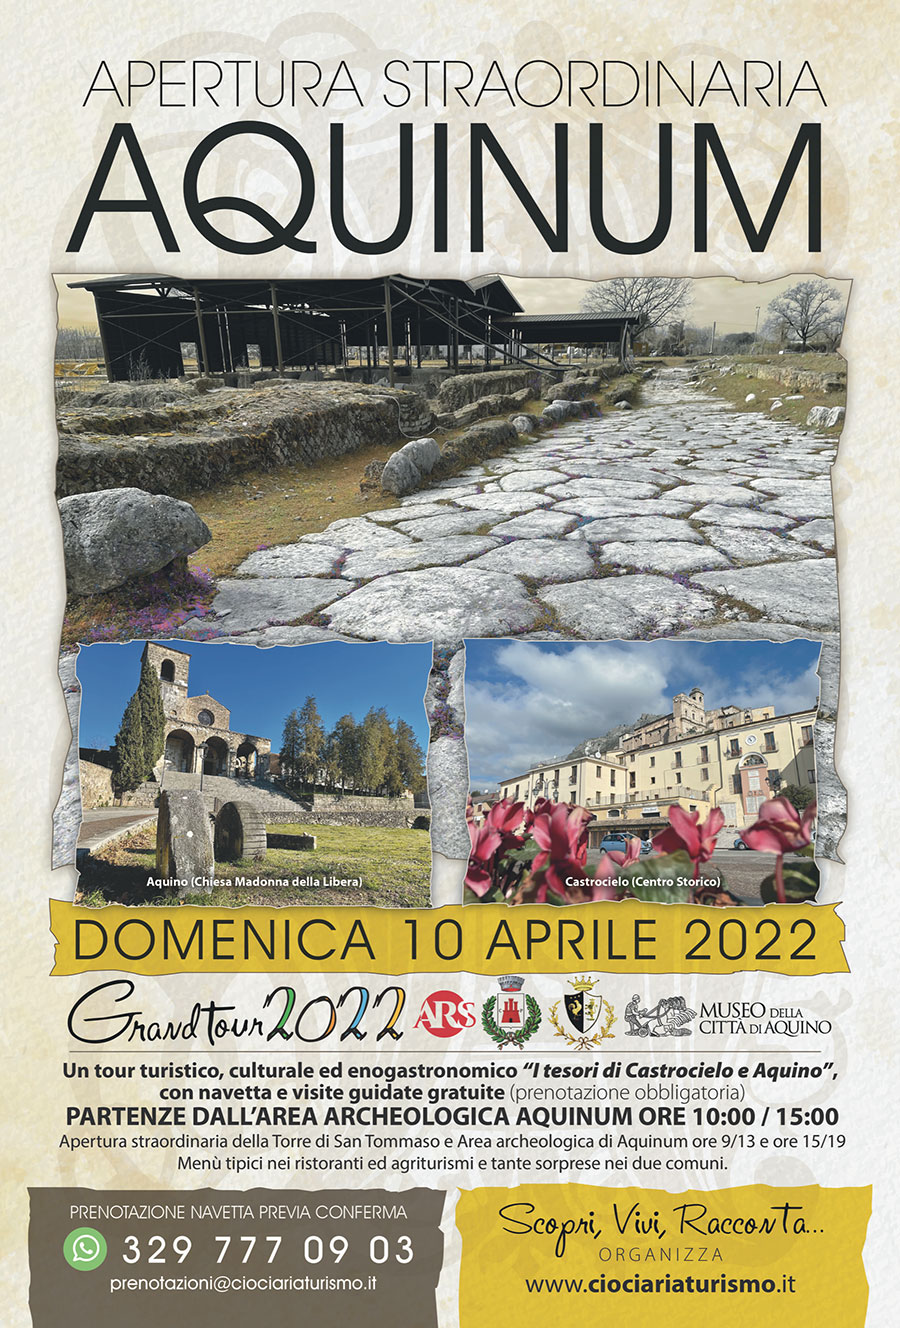 Grand Tour in Ciociaria 2022: I Tesori di Aquinum, Aquino e Castrocielo